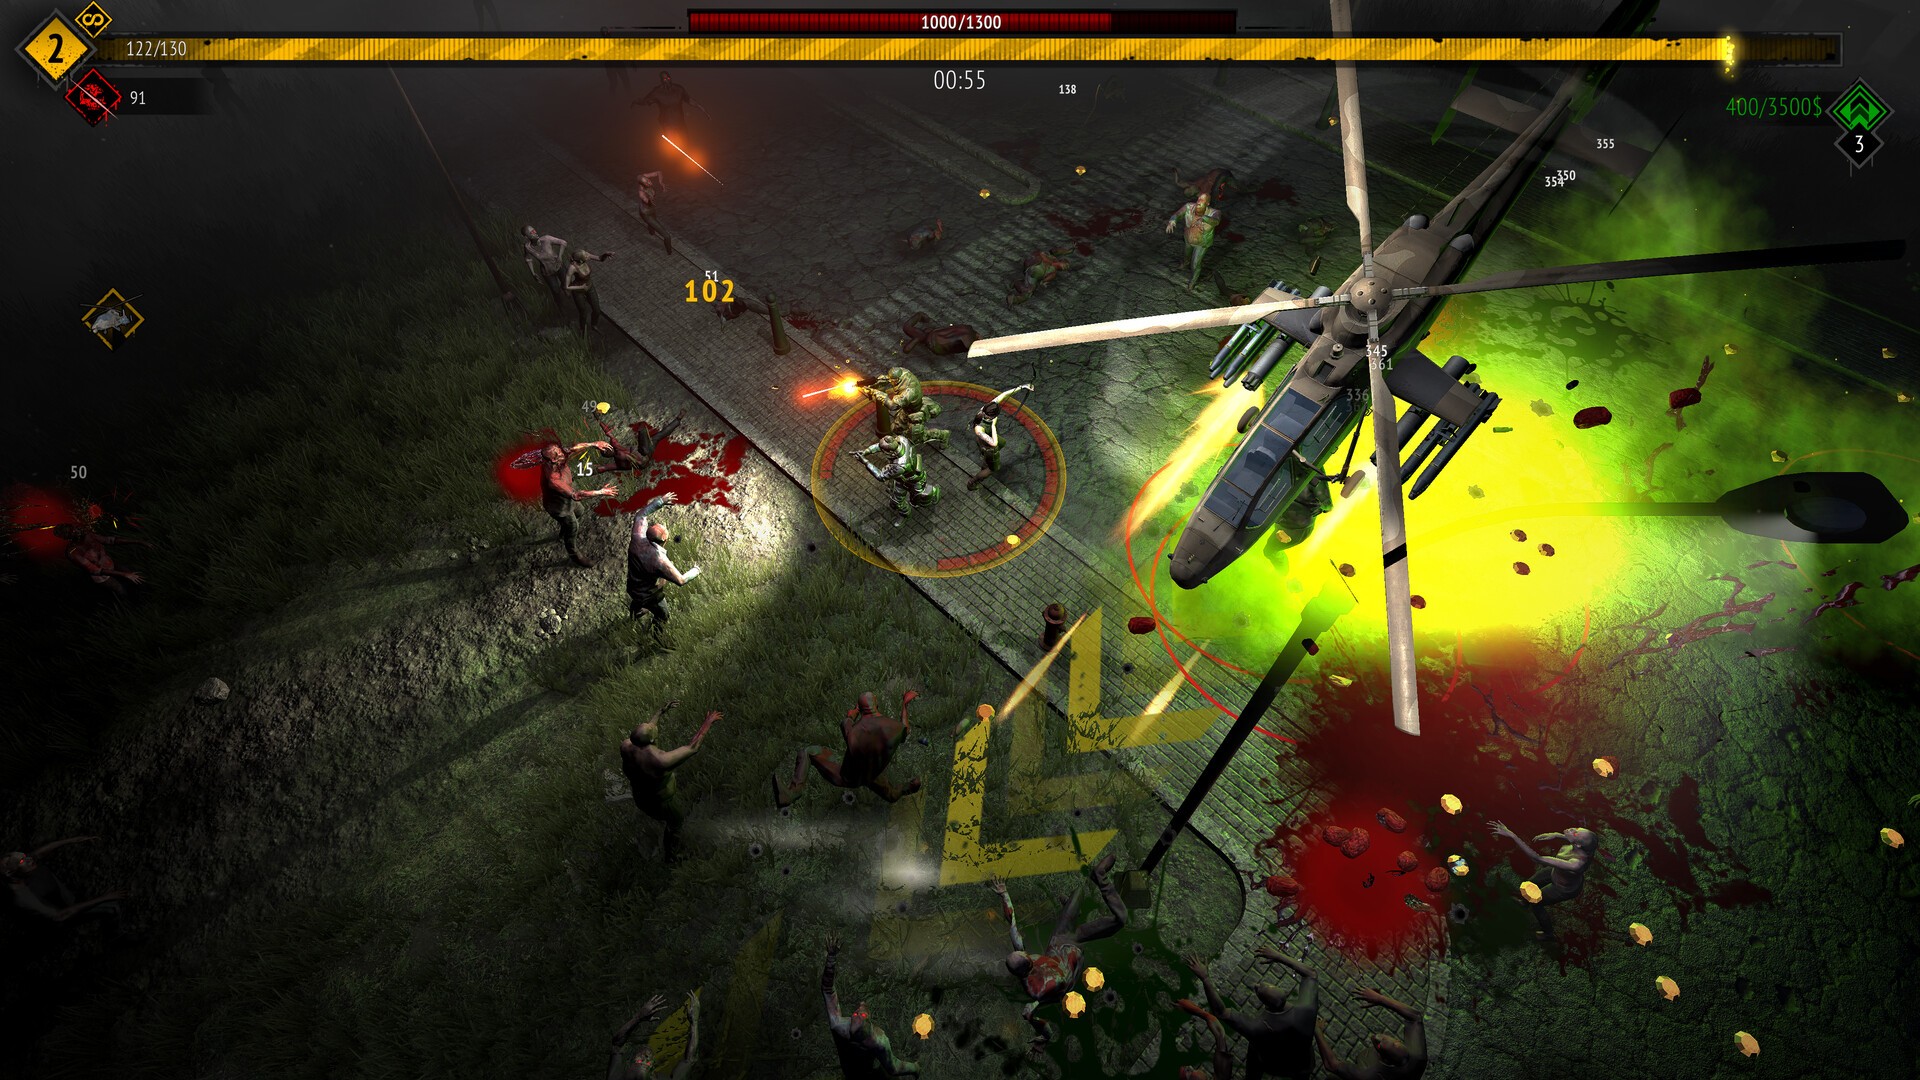 The Enemy - Rockstar Games agora tem seu próprio launcher no PC